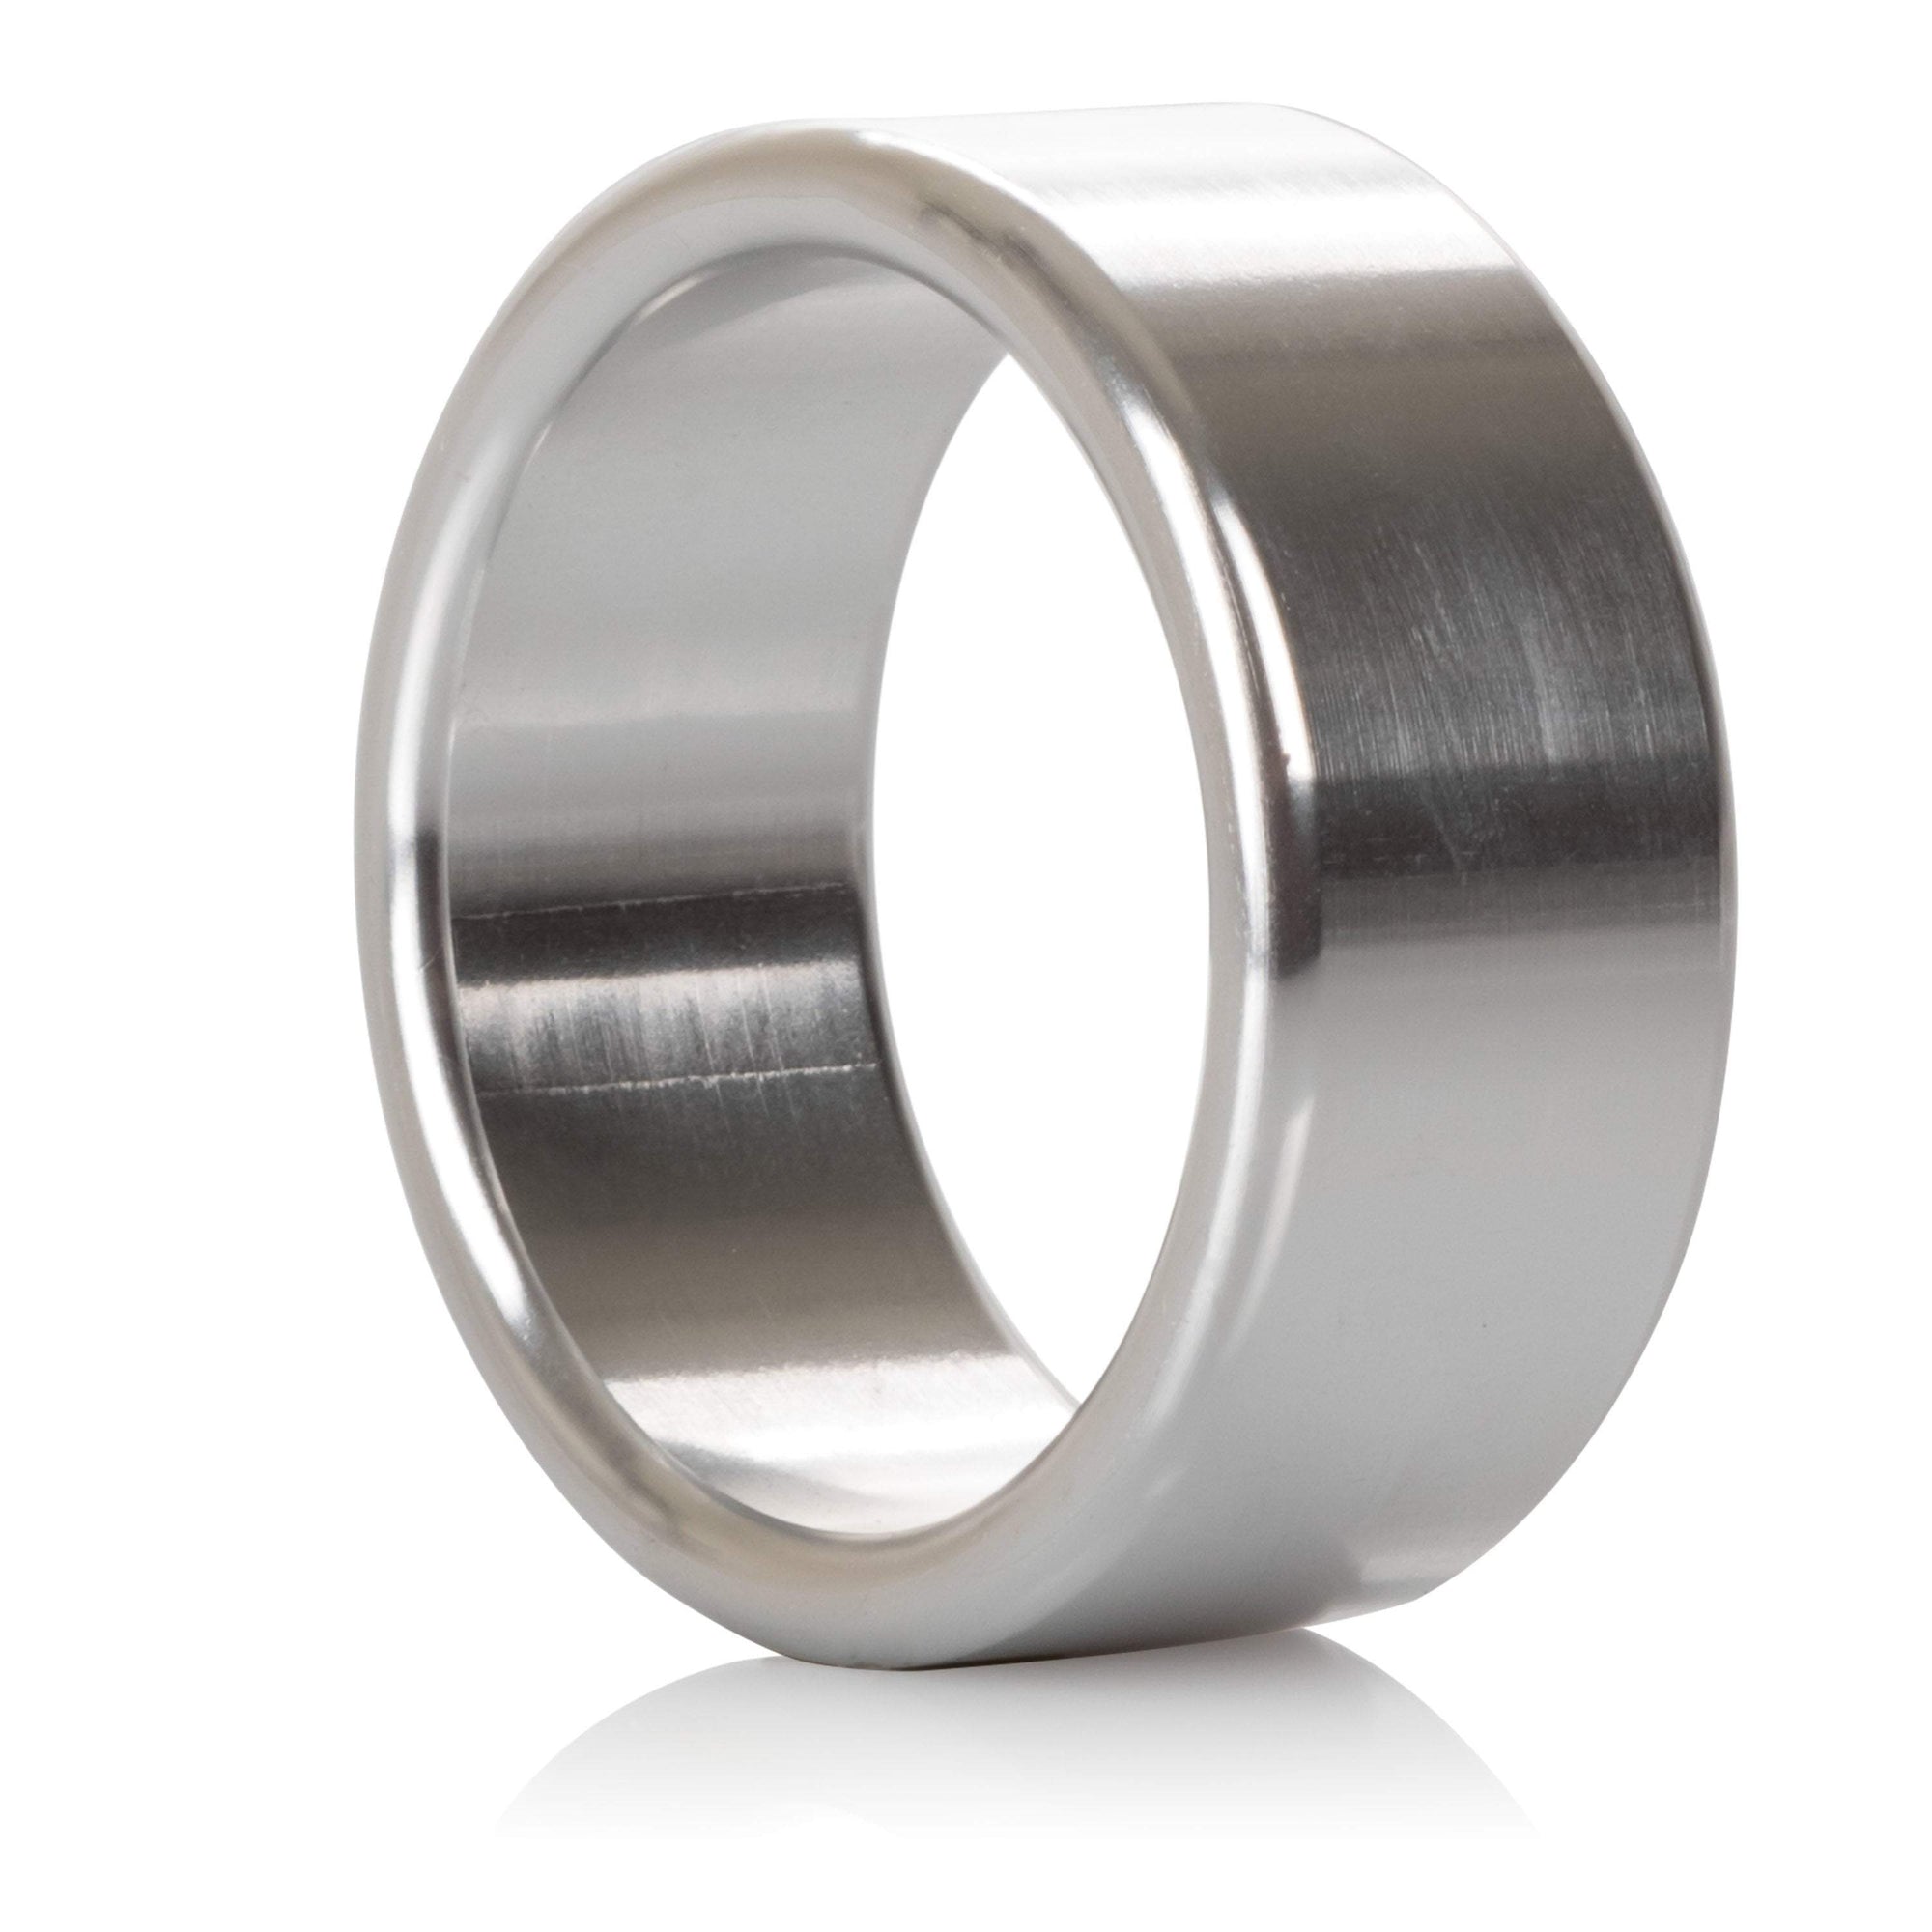 California Exotics - Alloy Metallic Cock Ring Medium (Silver) Metal Cock Ring (Non Vibration)